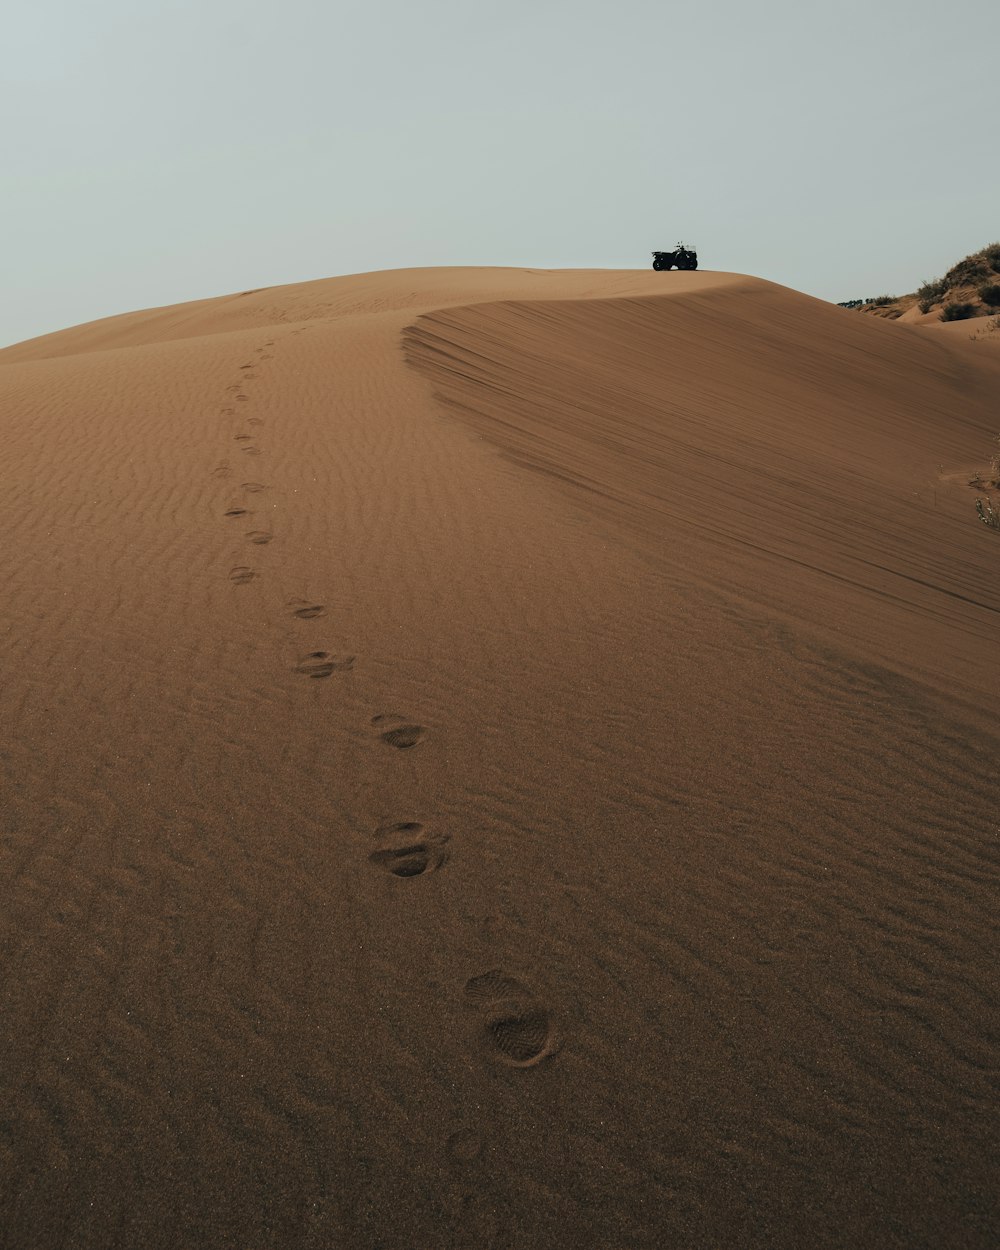 Un jeep conduciendo por una colina arenosa con huellas en la arena